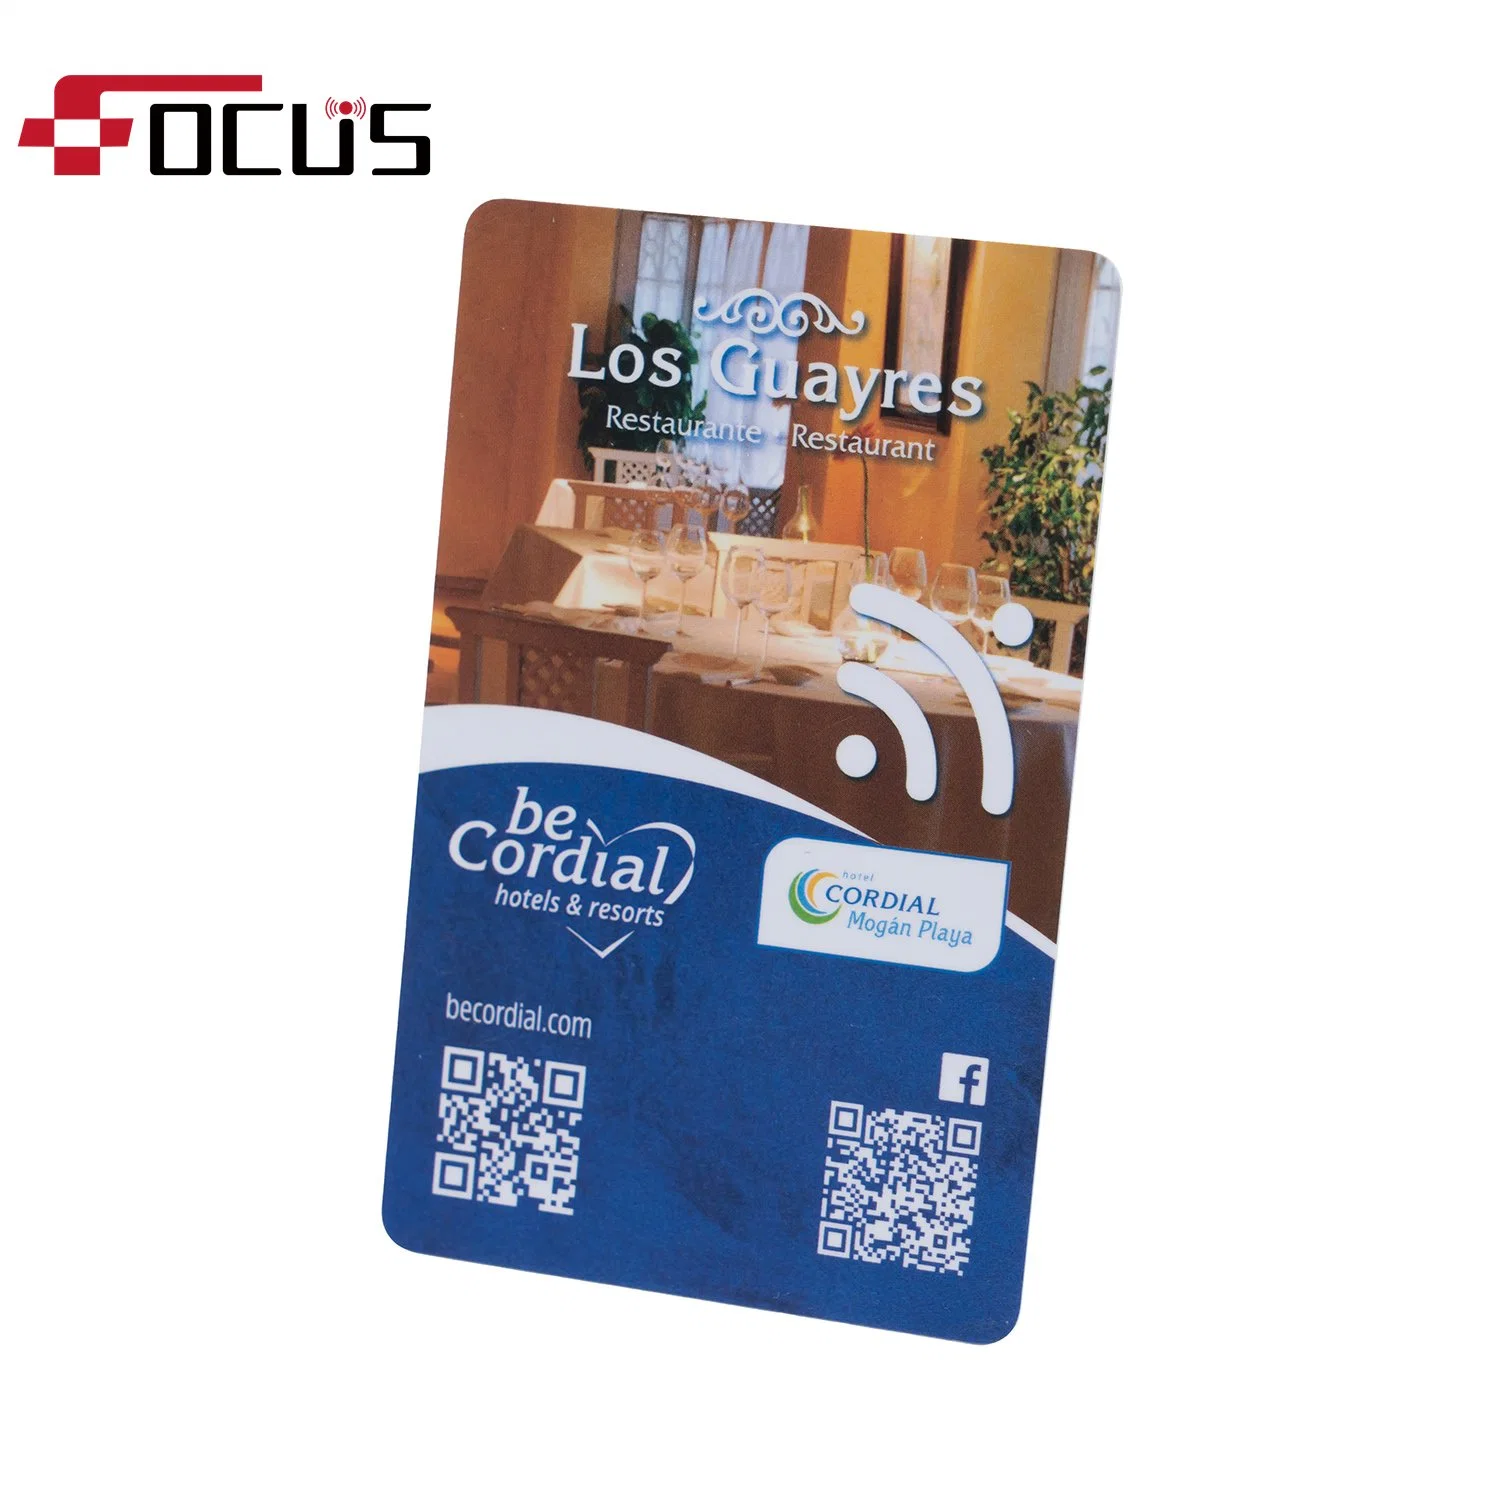 Proximity ISO F08 Business Key Card RFID Smart Card für Hotel